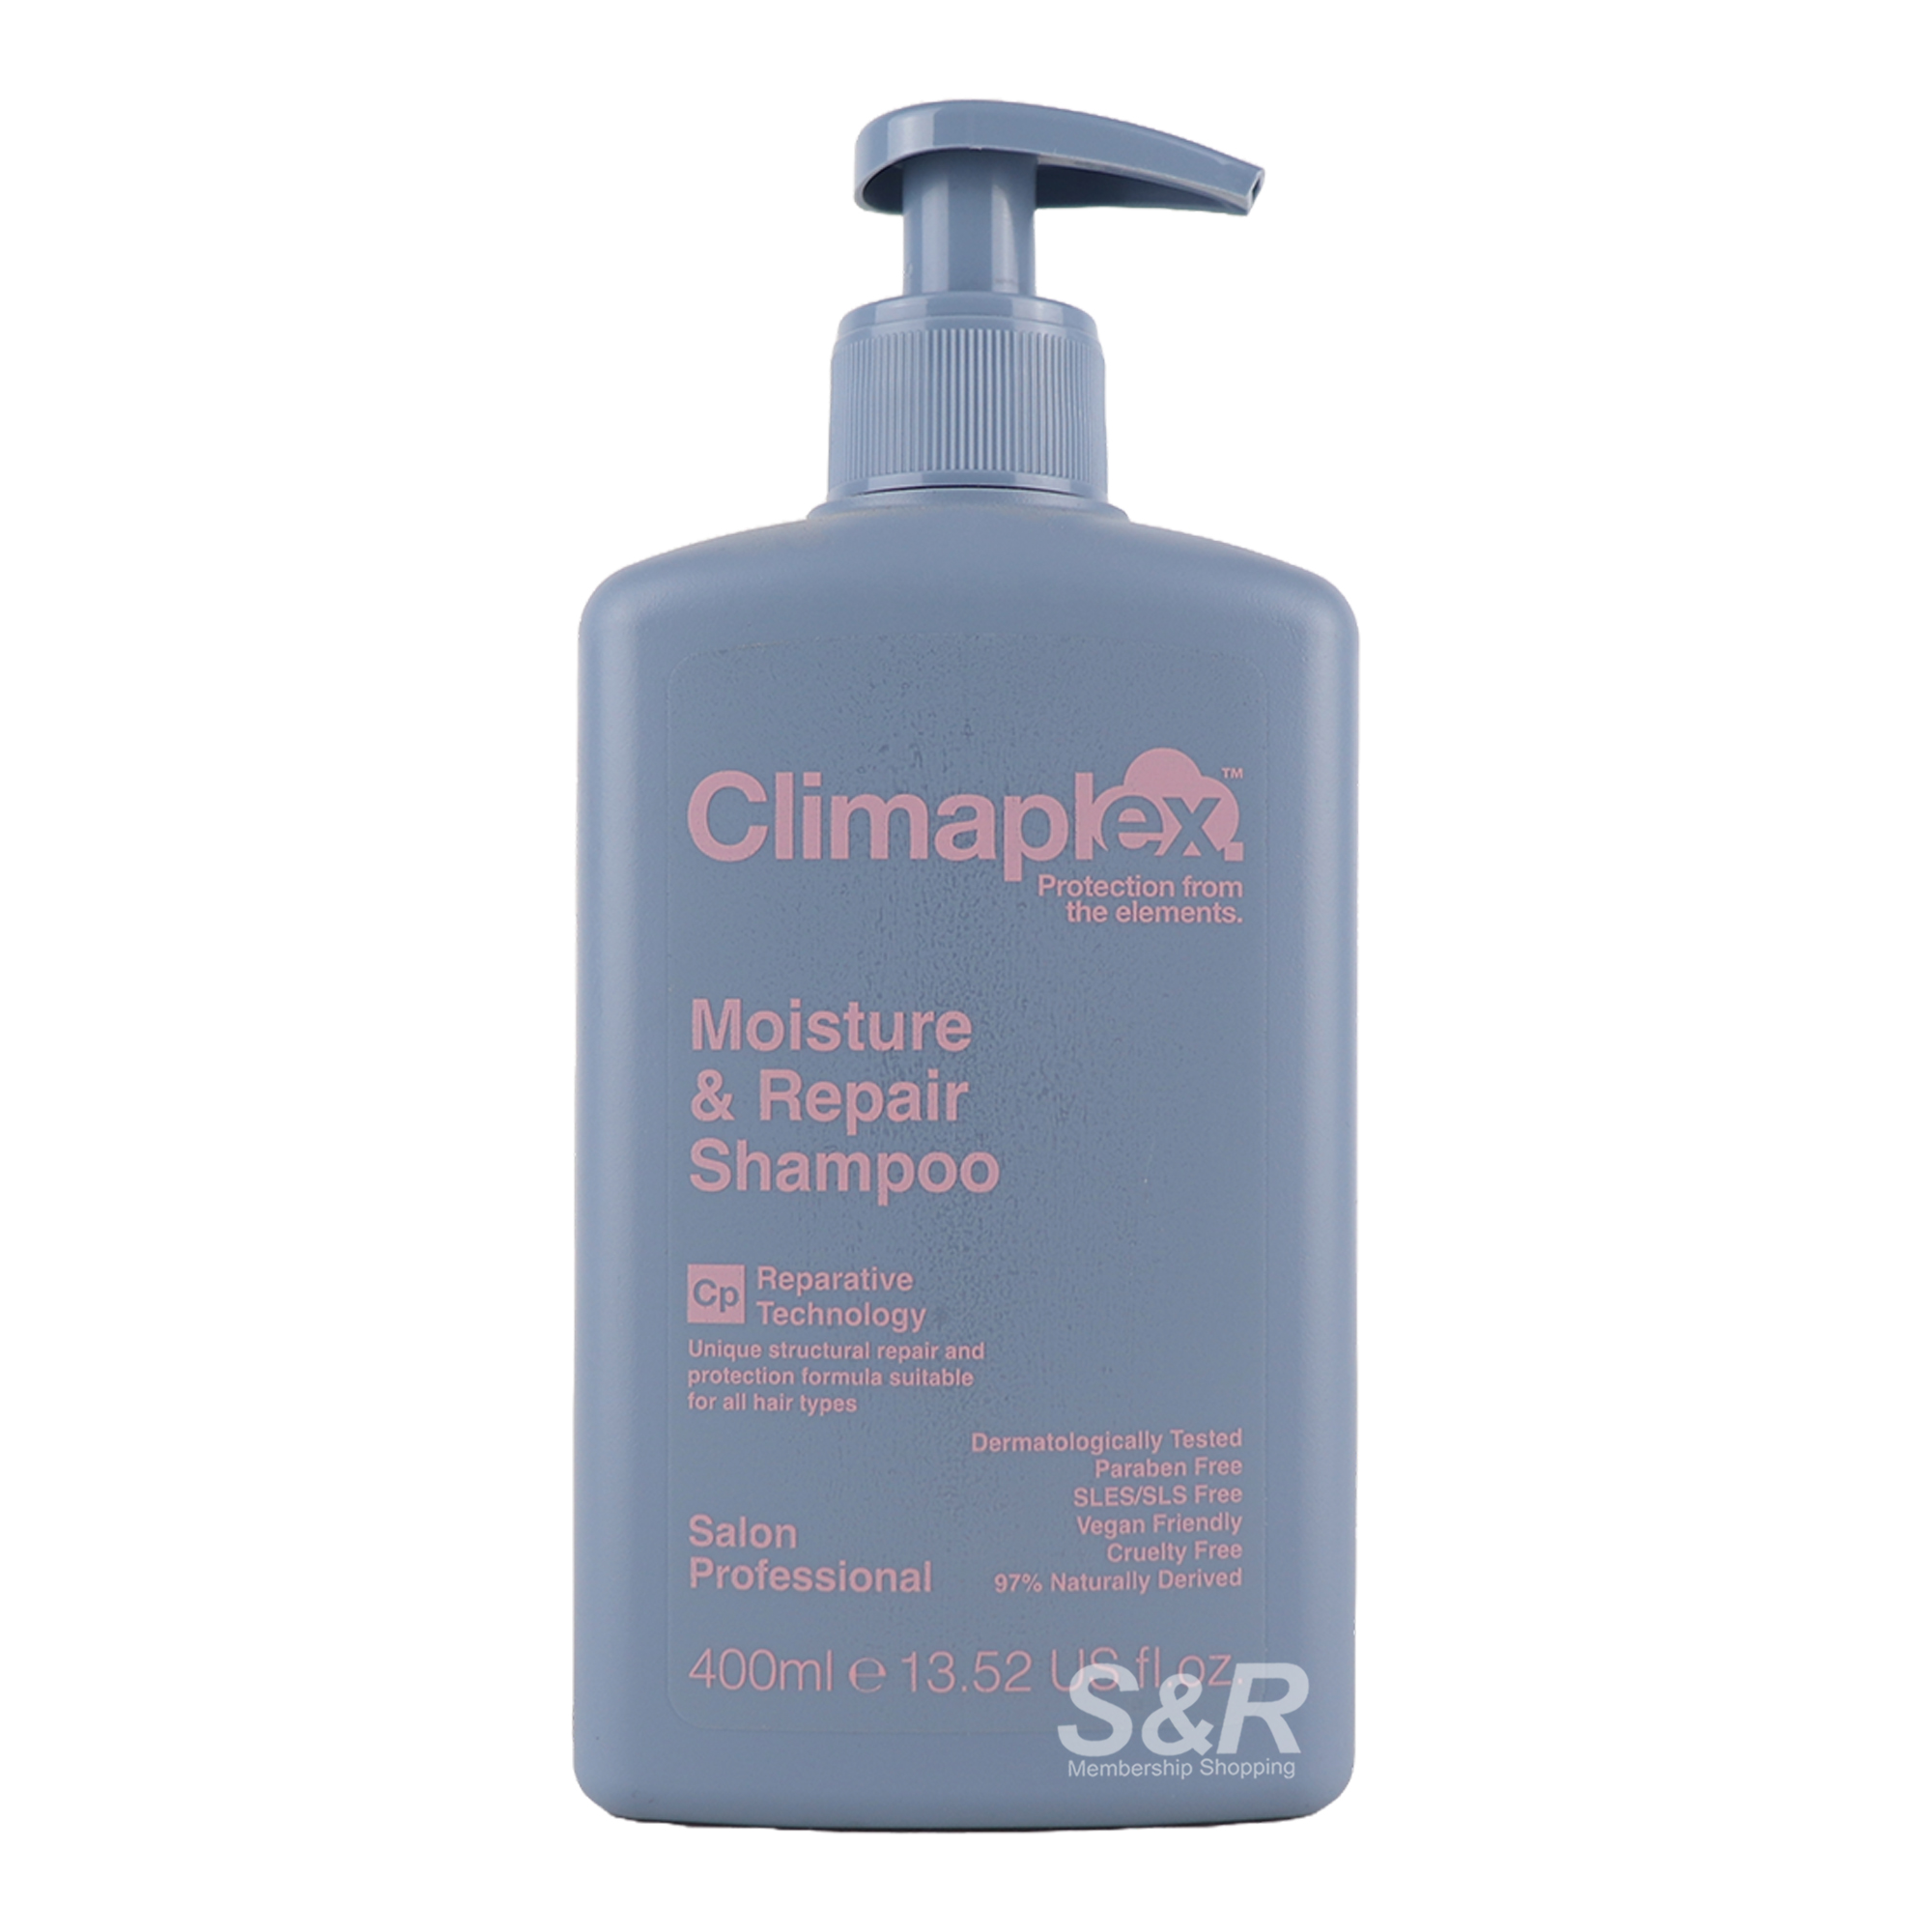 Climaplex Moisture & Repair Shampoo 400mL